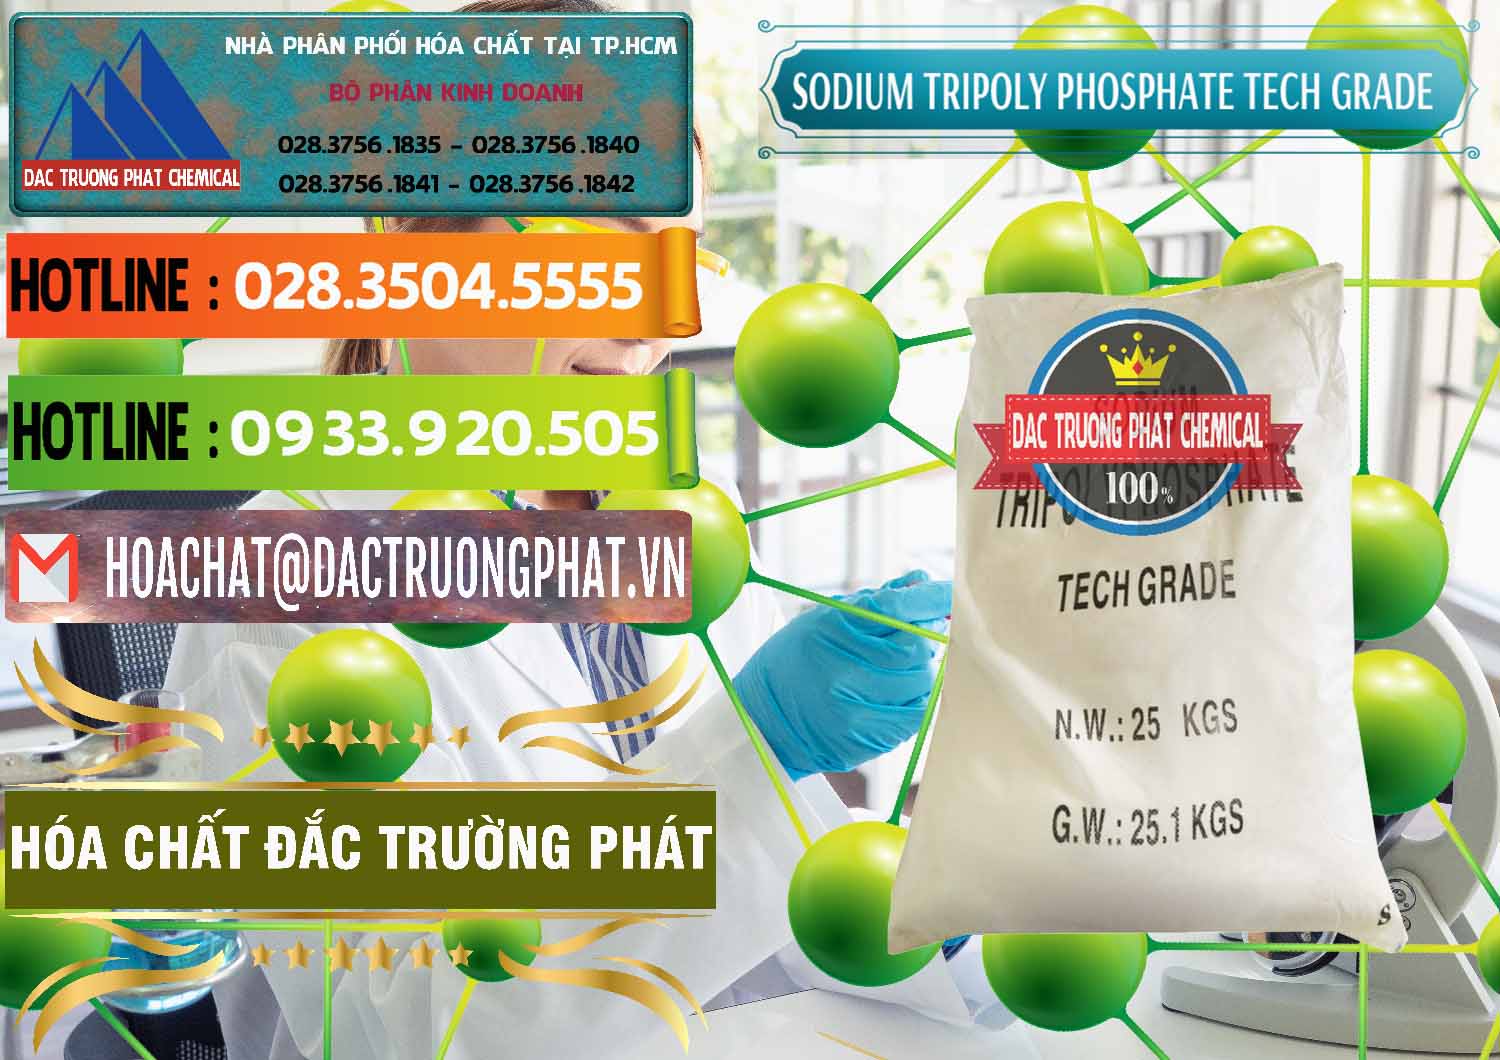 Đơn vị chuyên phân phối ( bán ) Sodium Tripoly Phosphate - STPP Tech Grade Trung Quốc China - 0453 - Cty chuyên cung cấp & bán hóa chất tại TP.HCM - cungcaphoachat.com.vn